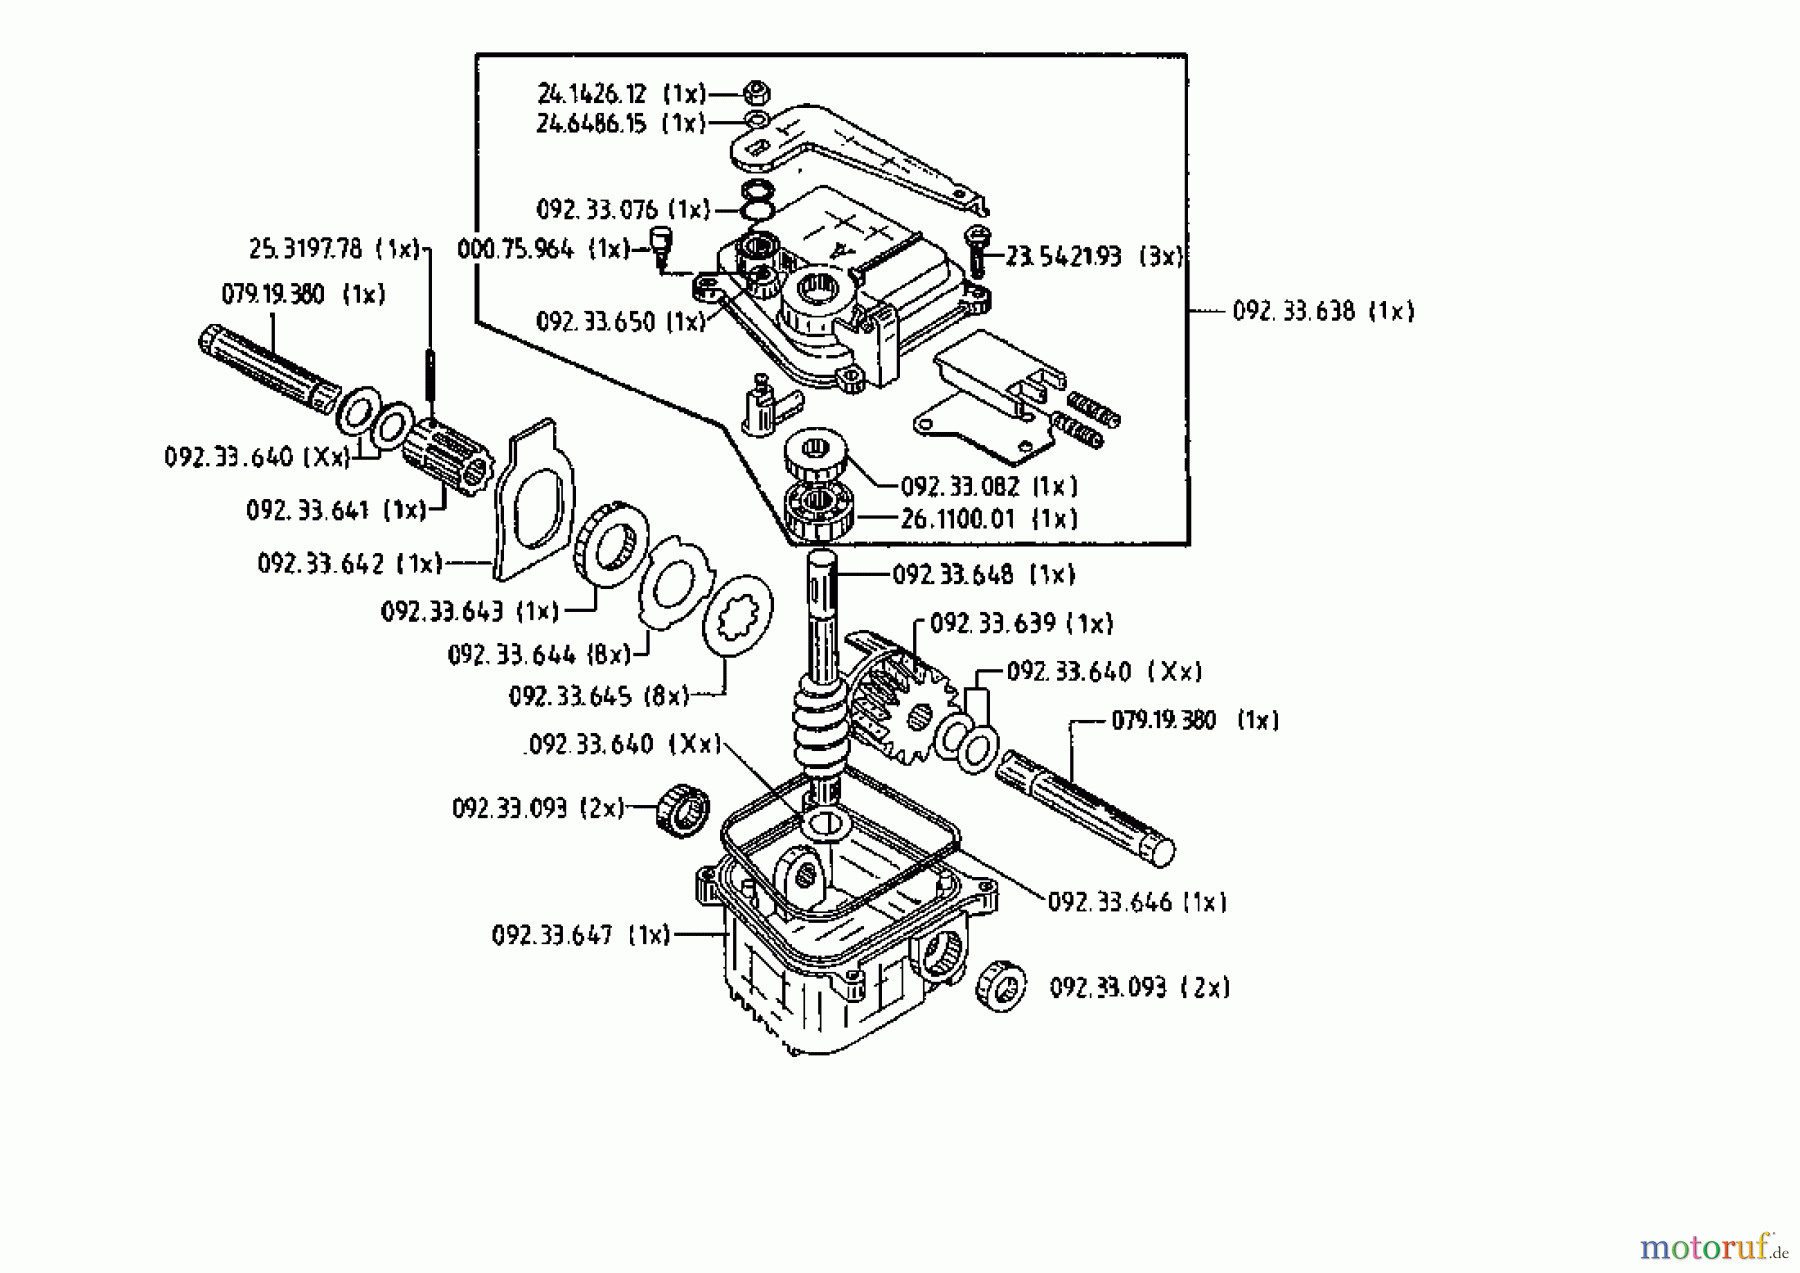  Gutbrod Petrol mower self propelled HB 48 REL 02815.02  (1993) Gearbox